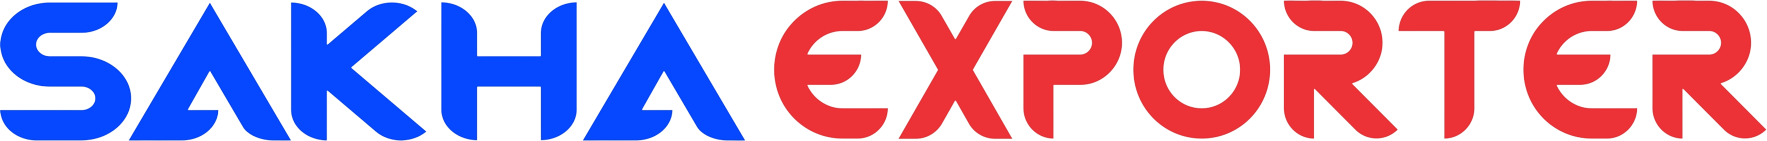 brnad-logo